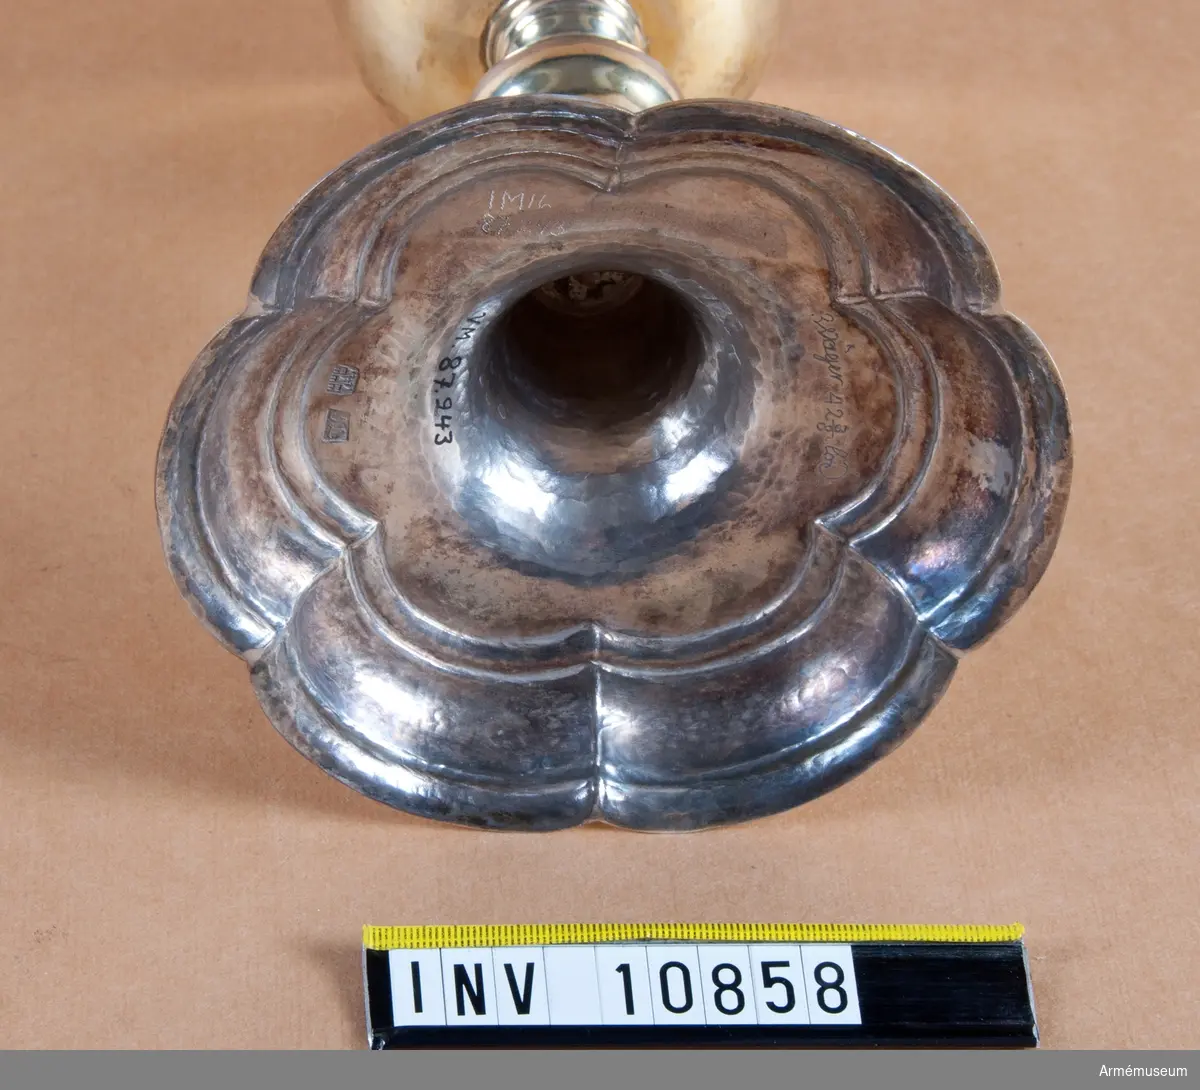 Grupp B II.
Äldre nr -.
Kalk av förgyllt silver för "Westgiöte Cavallerie Regemente 1753". Tillverkad av Jöns Lund, Skara. Samhörande paten, läderfodral.